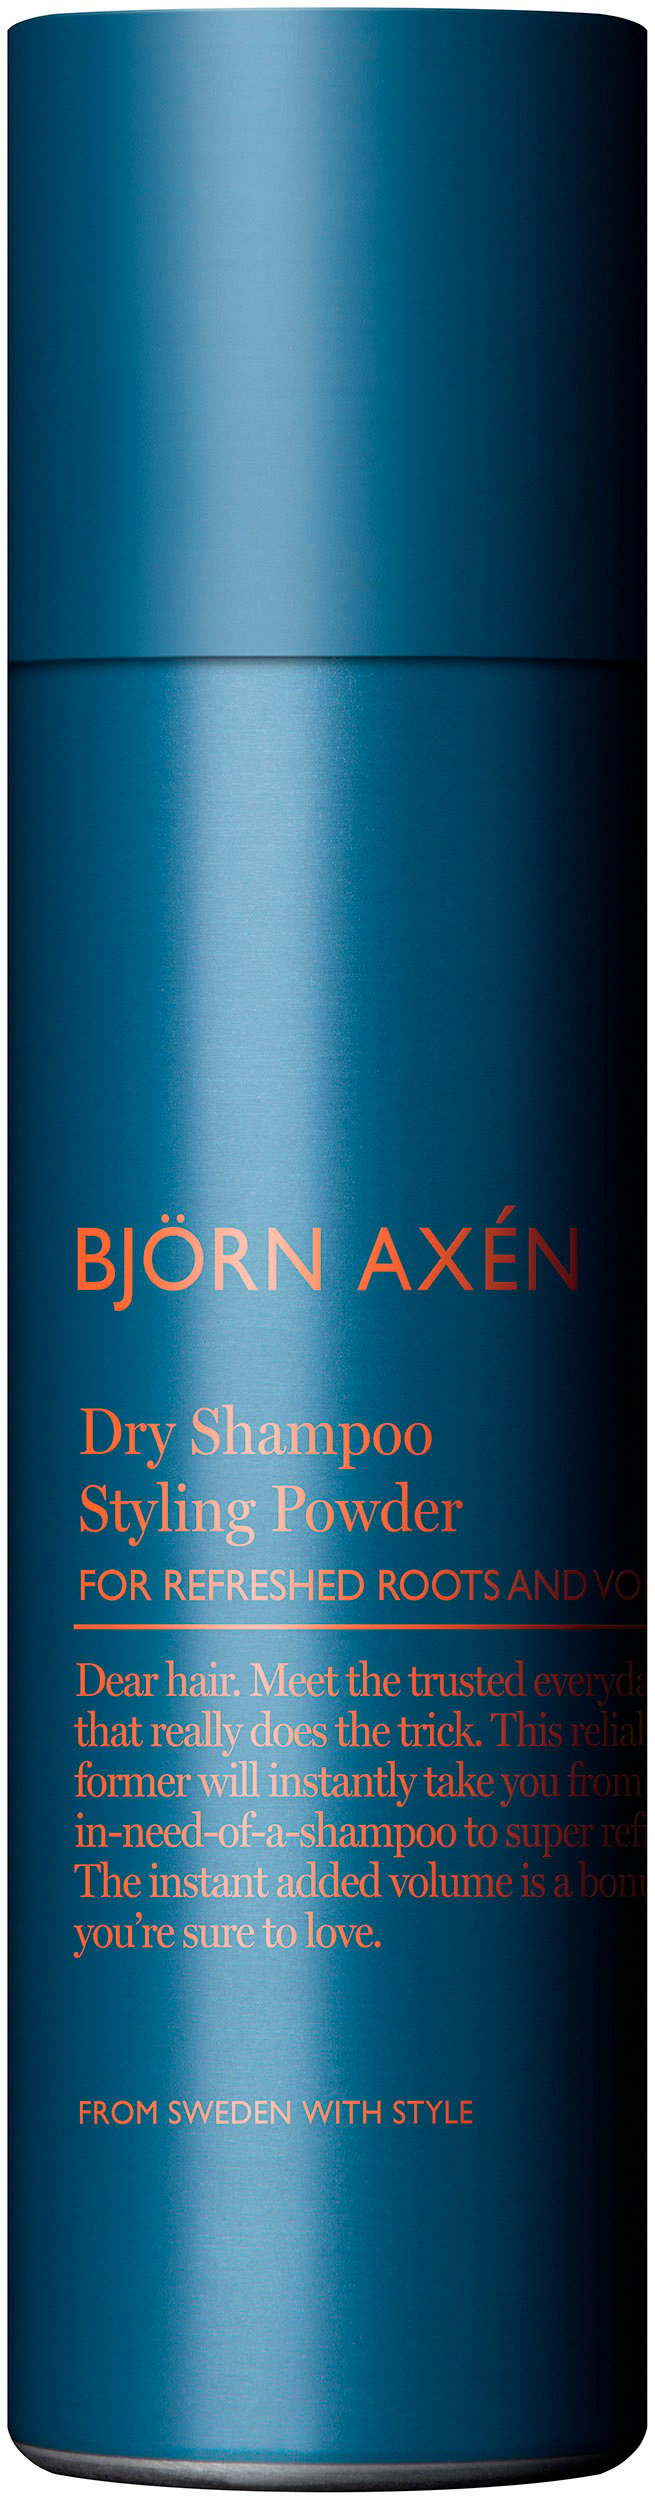 Björn Axén Styling powder dry schampoo 200 ml